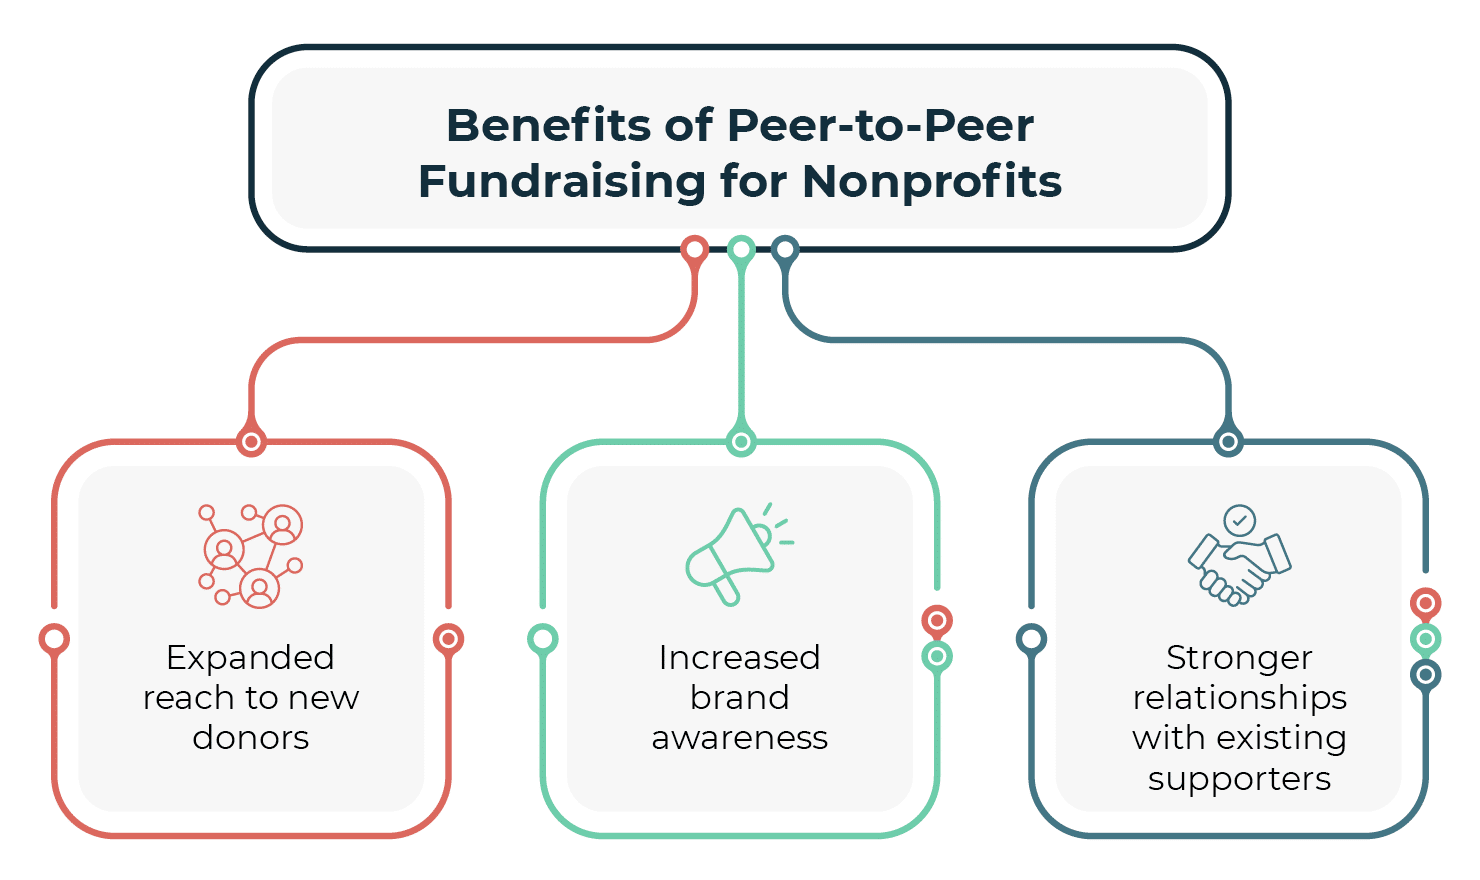 Peer-to-peer fundraising best practices